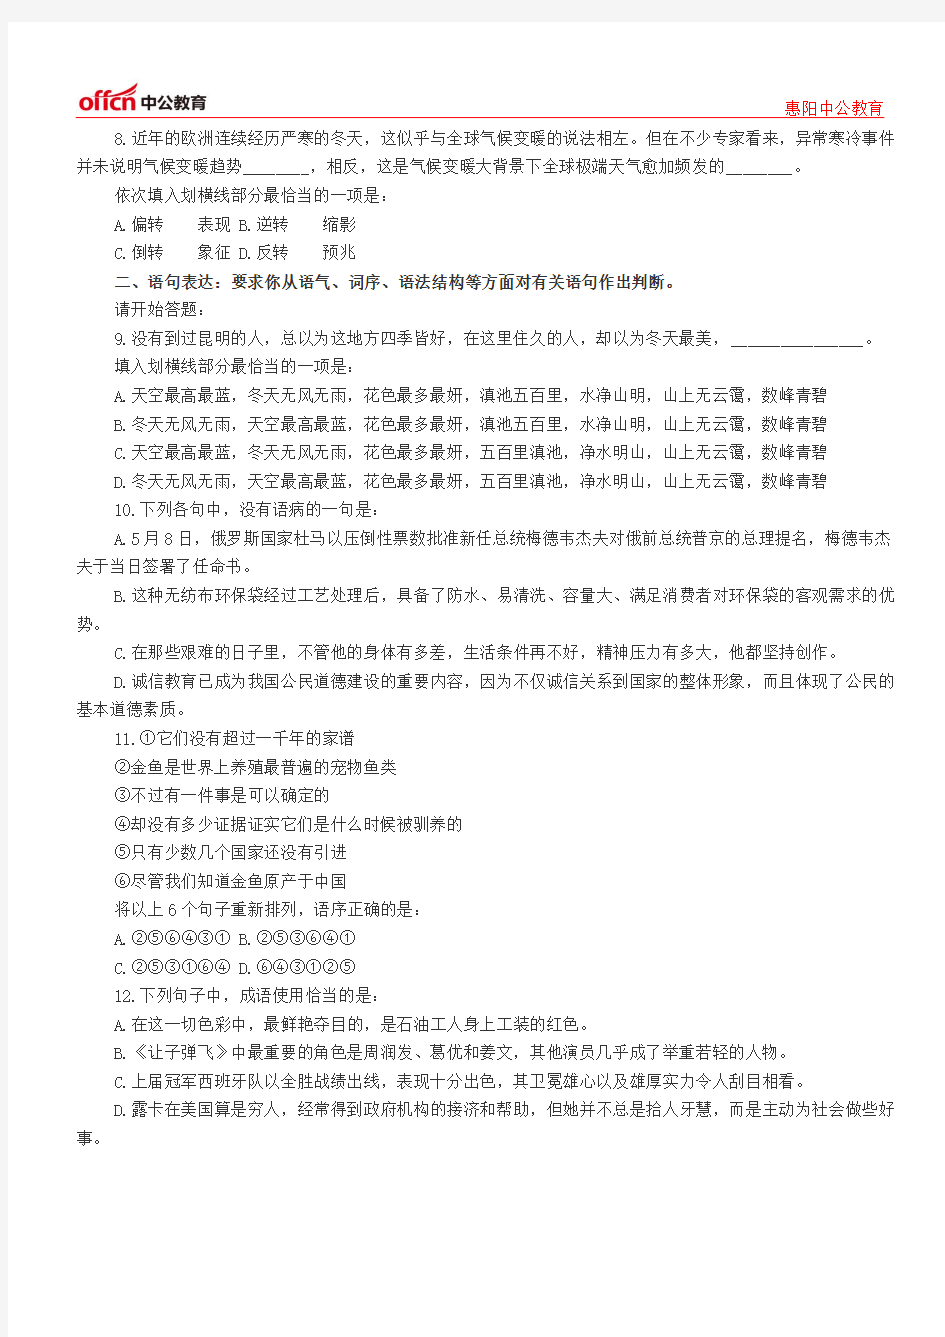 中国银行招聘考试模拟试题行测部分